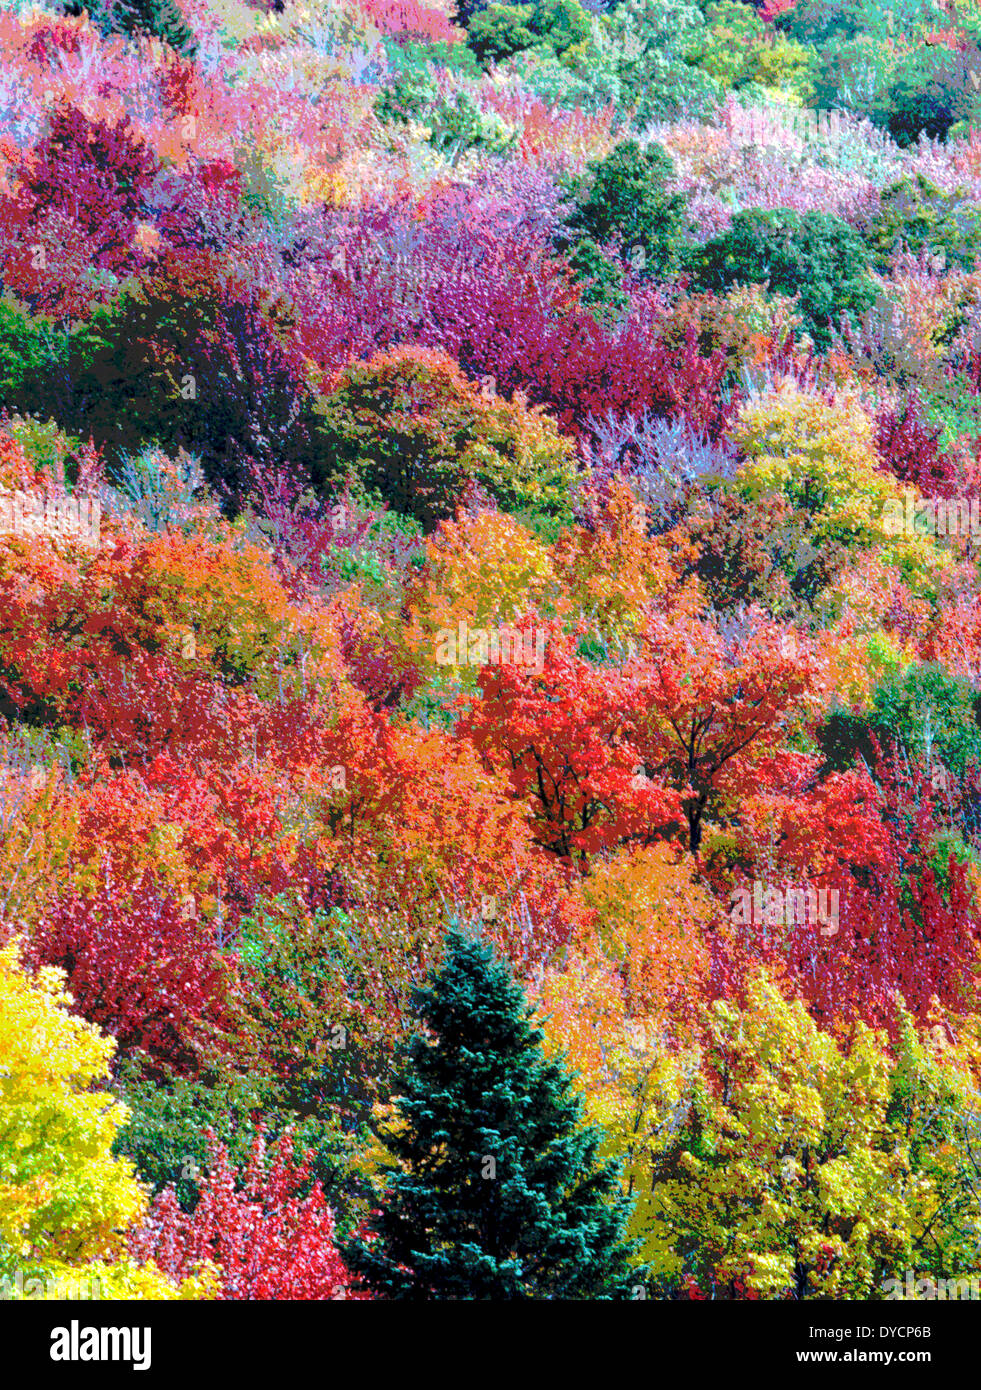 Le foglie multicolore di alberi in autunno in Nuova Inghilterra, USA, sono state digitalmente alterata in modo da creare una pittura vibrante di caduta delle foglie. Foto Stock